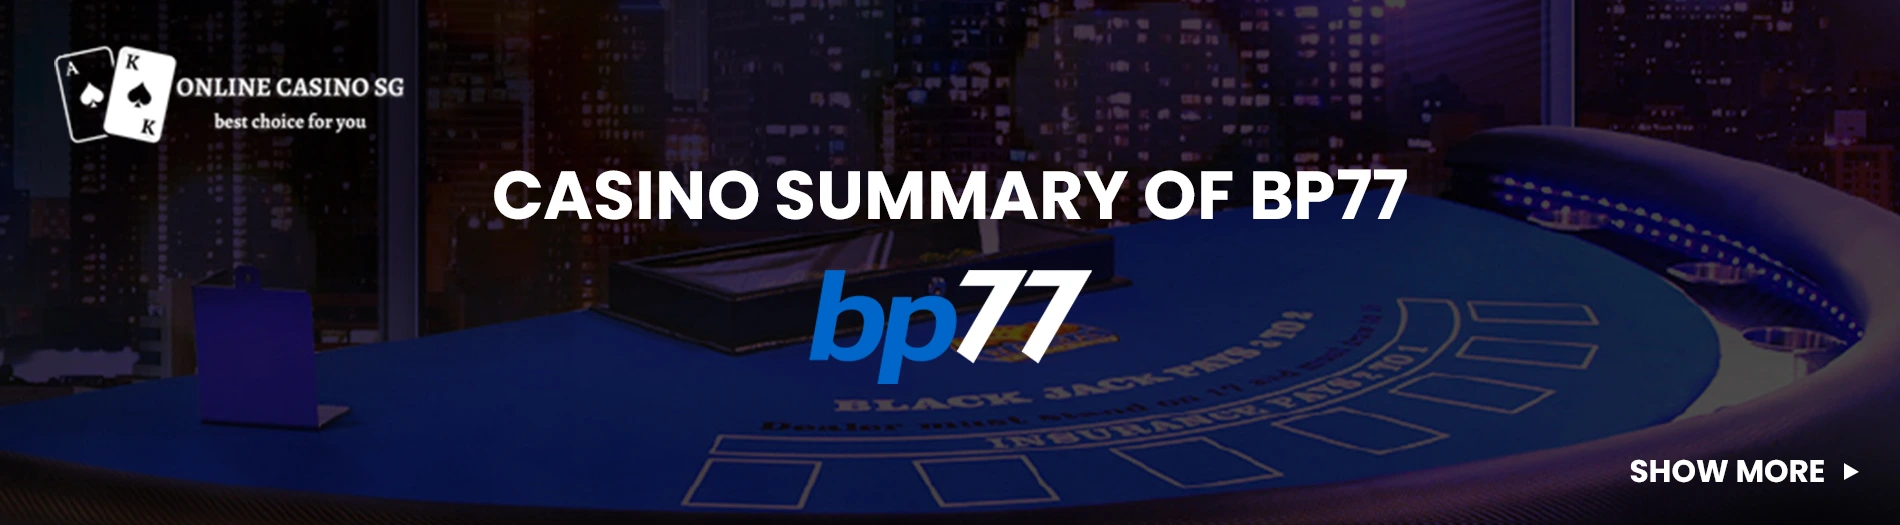 Casino summary of bp77 casino.